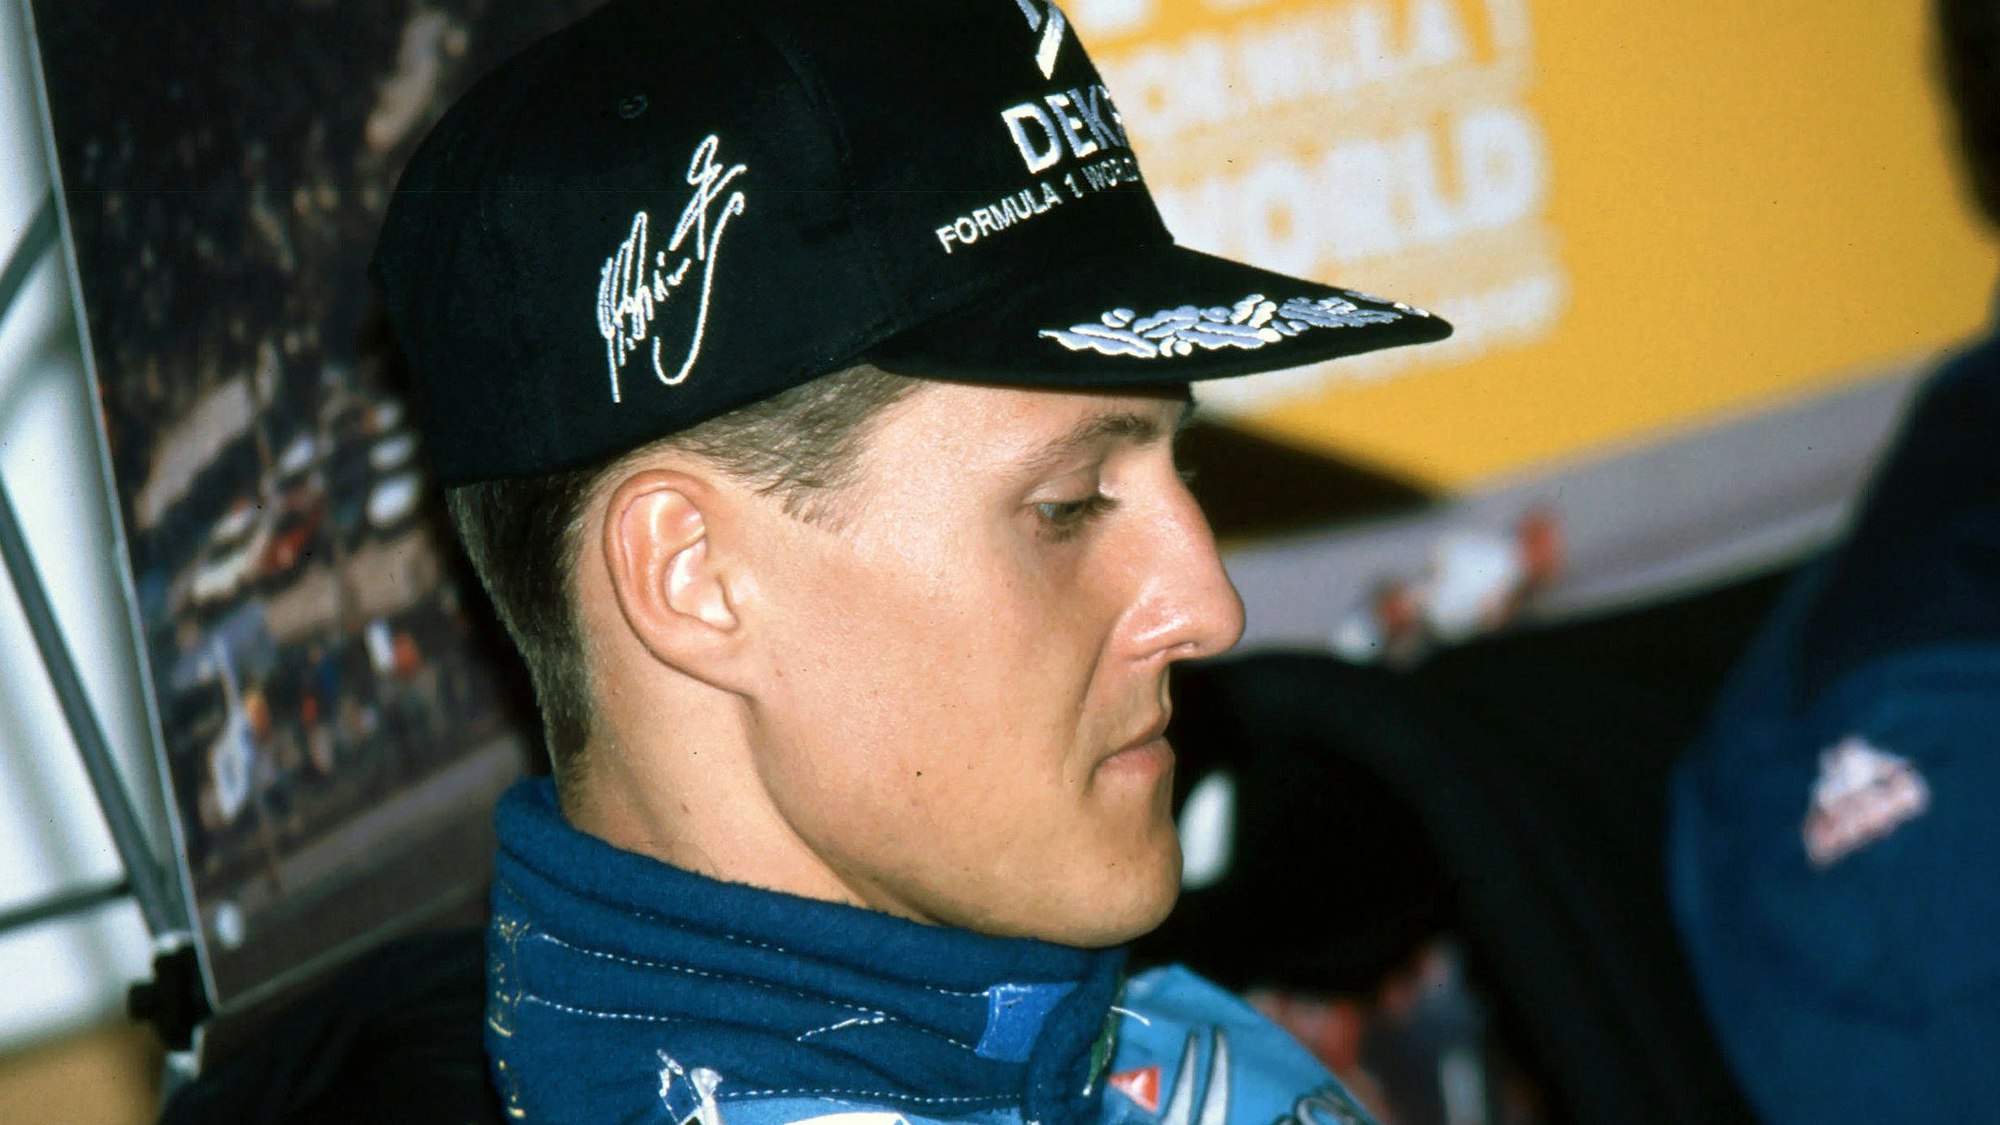 Einer der ganz Großen des Motorsports: Michael Schumacher. (Archivfoto)